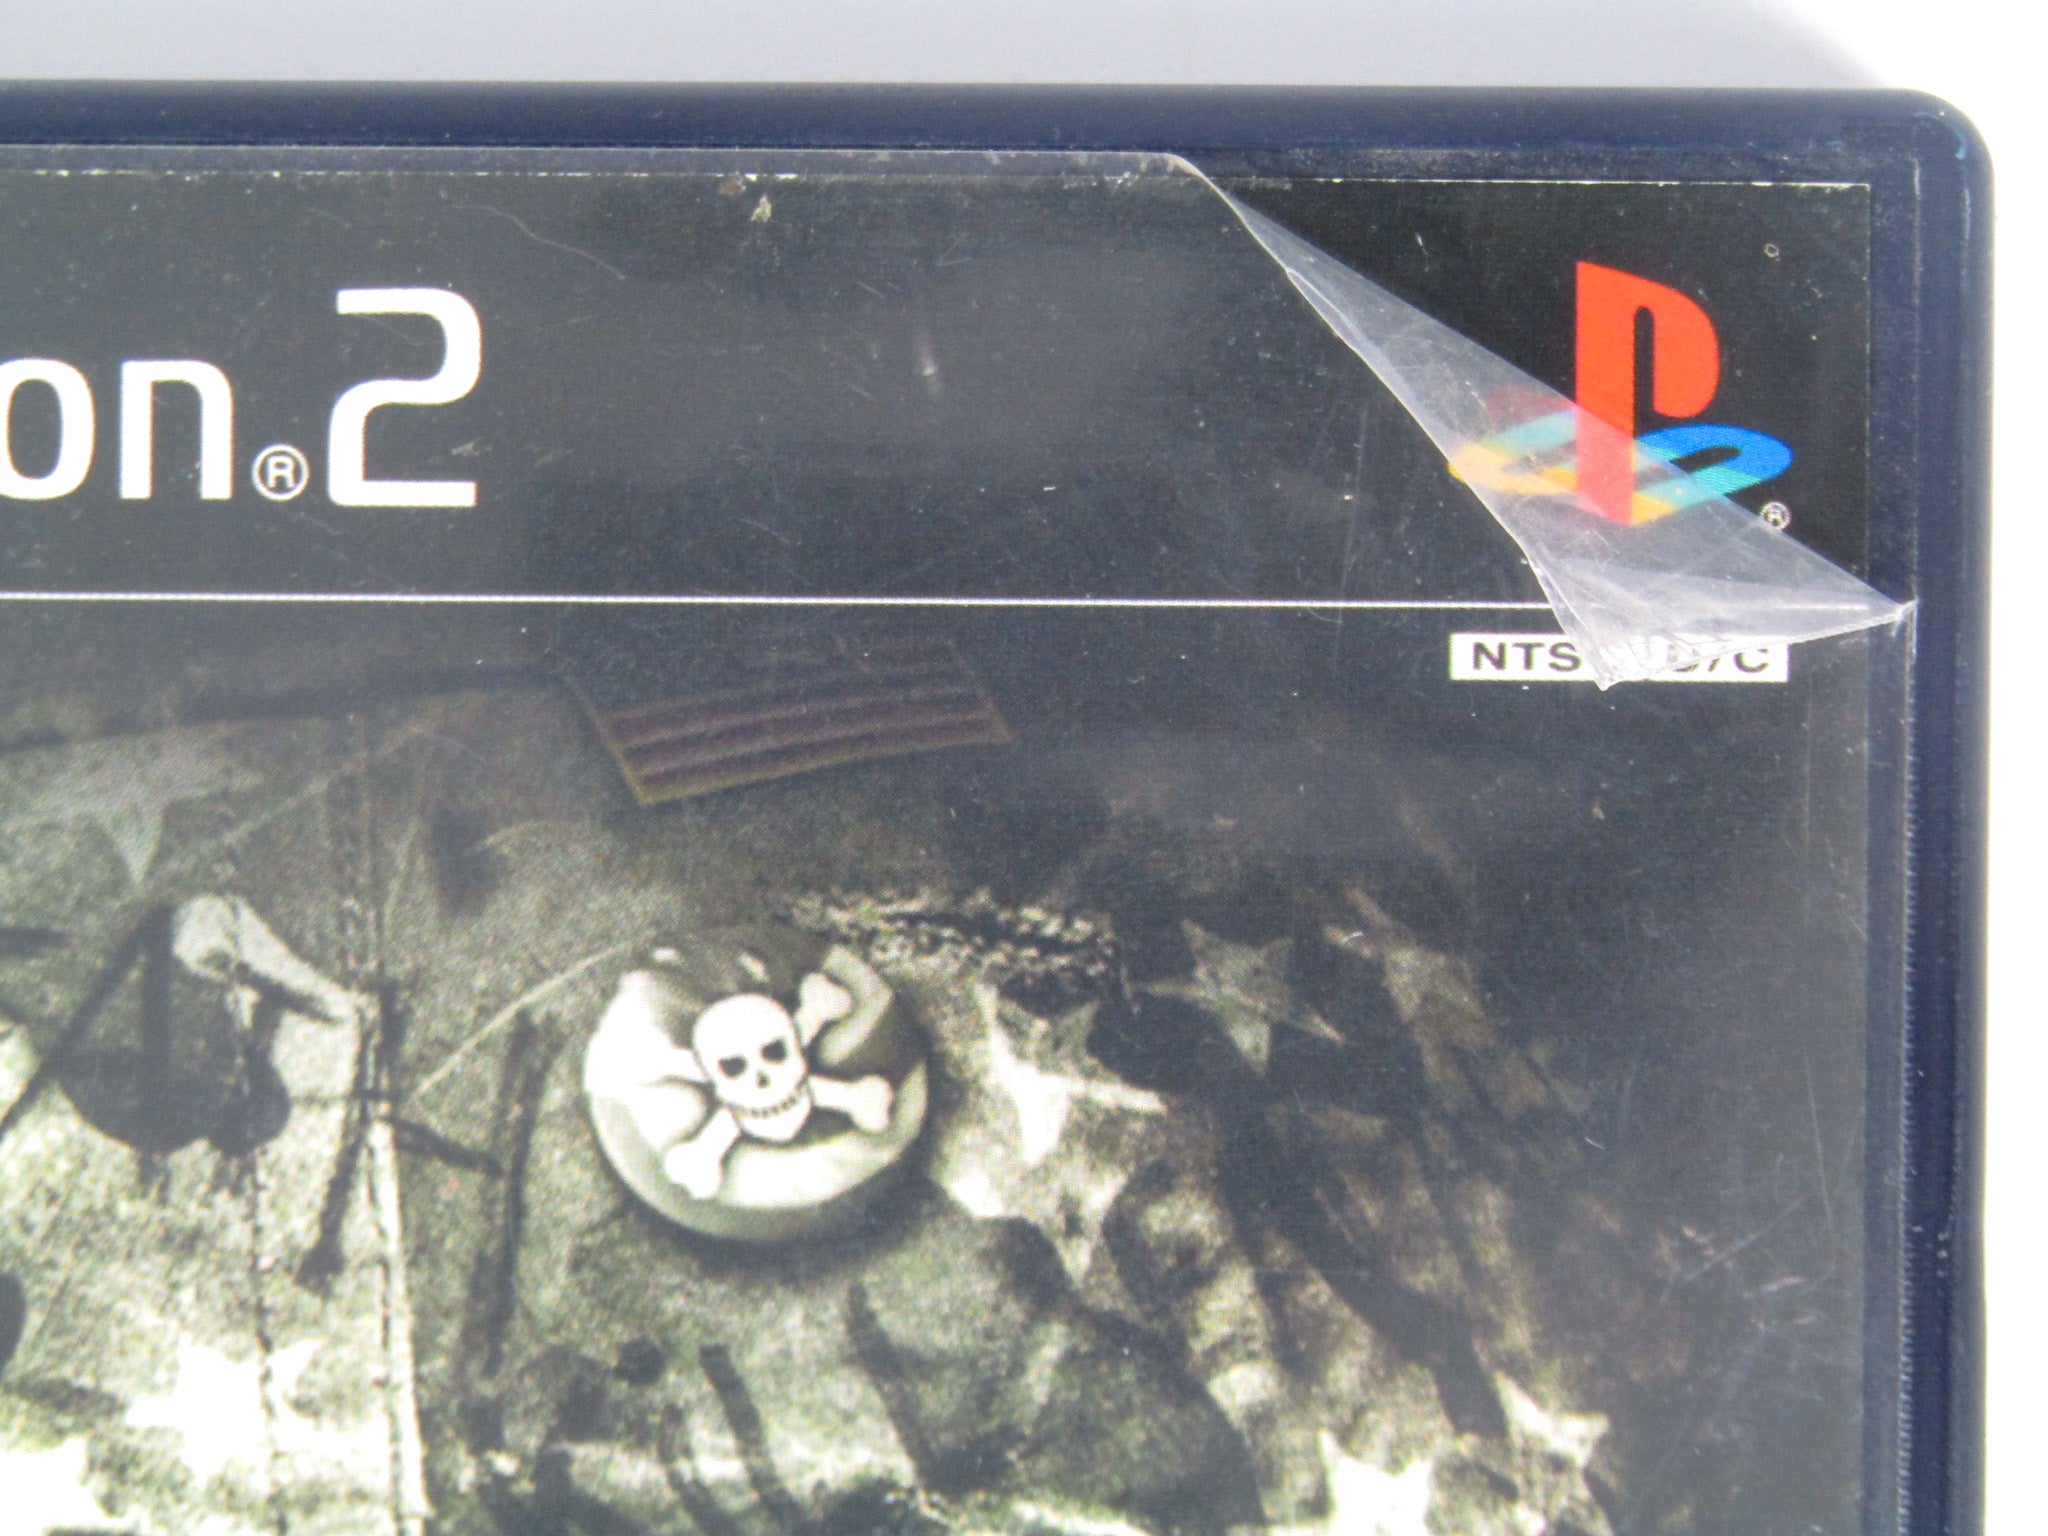 ShellShock - Nam '67 [SLUS 20828] (Sony Playstation 2) - Box Scans